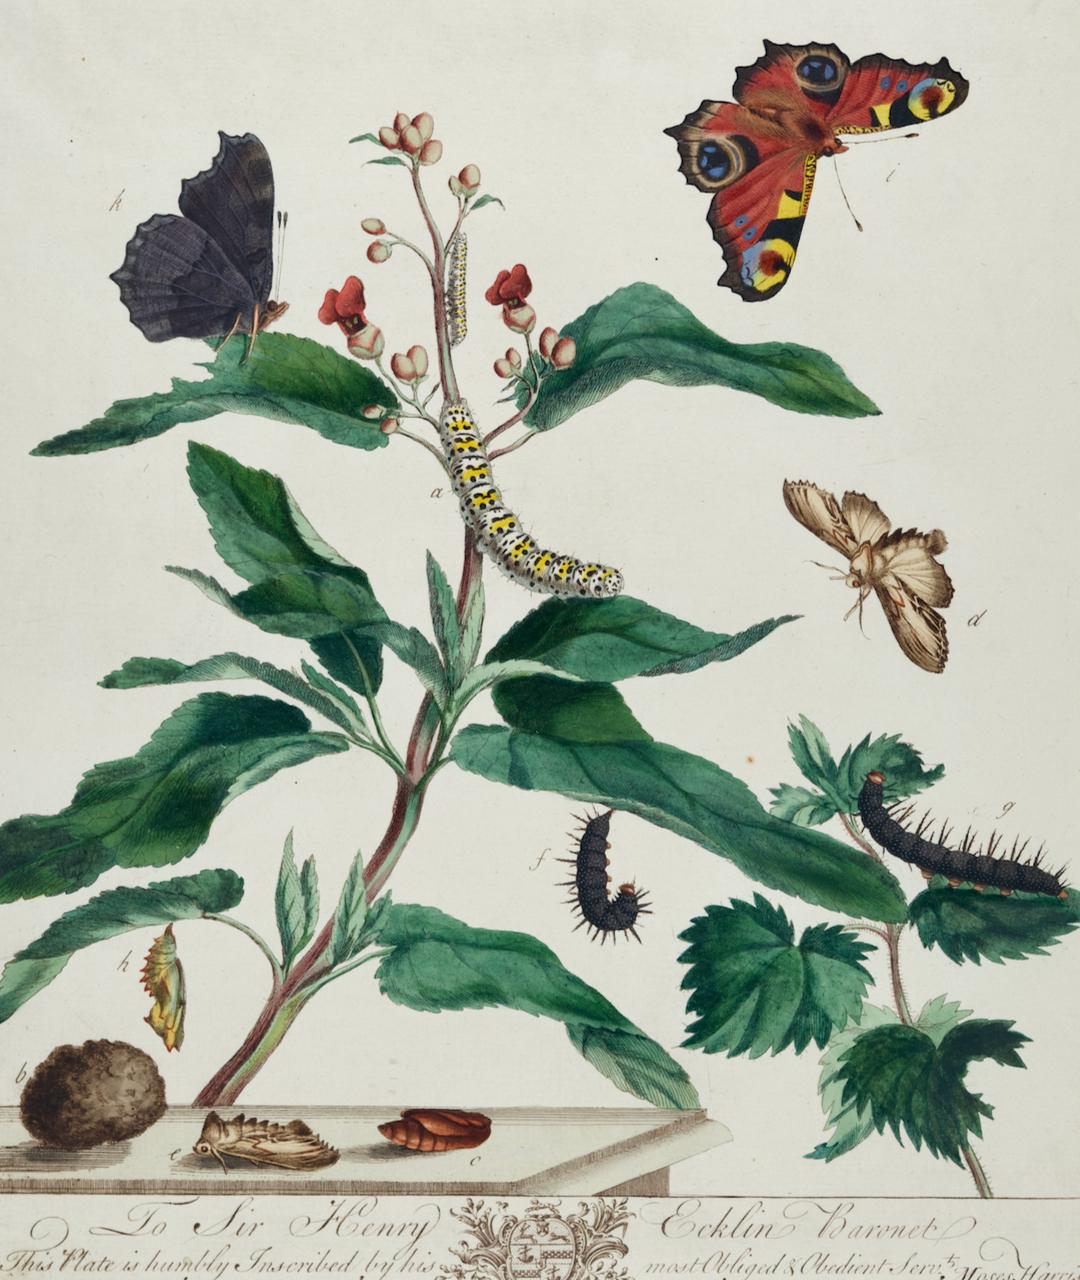 Papillon de paon et papillon de nuit : A 1ère éd. Gravure colorée à la main du 18e siècle par M. Harris - Print de Moses Harris